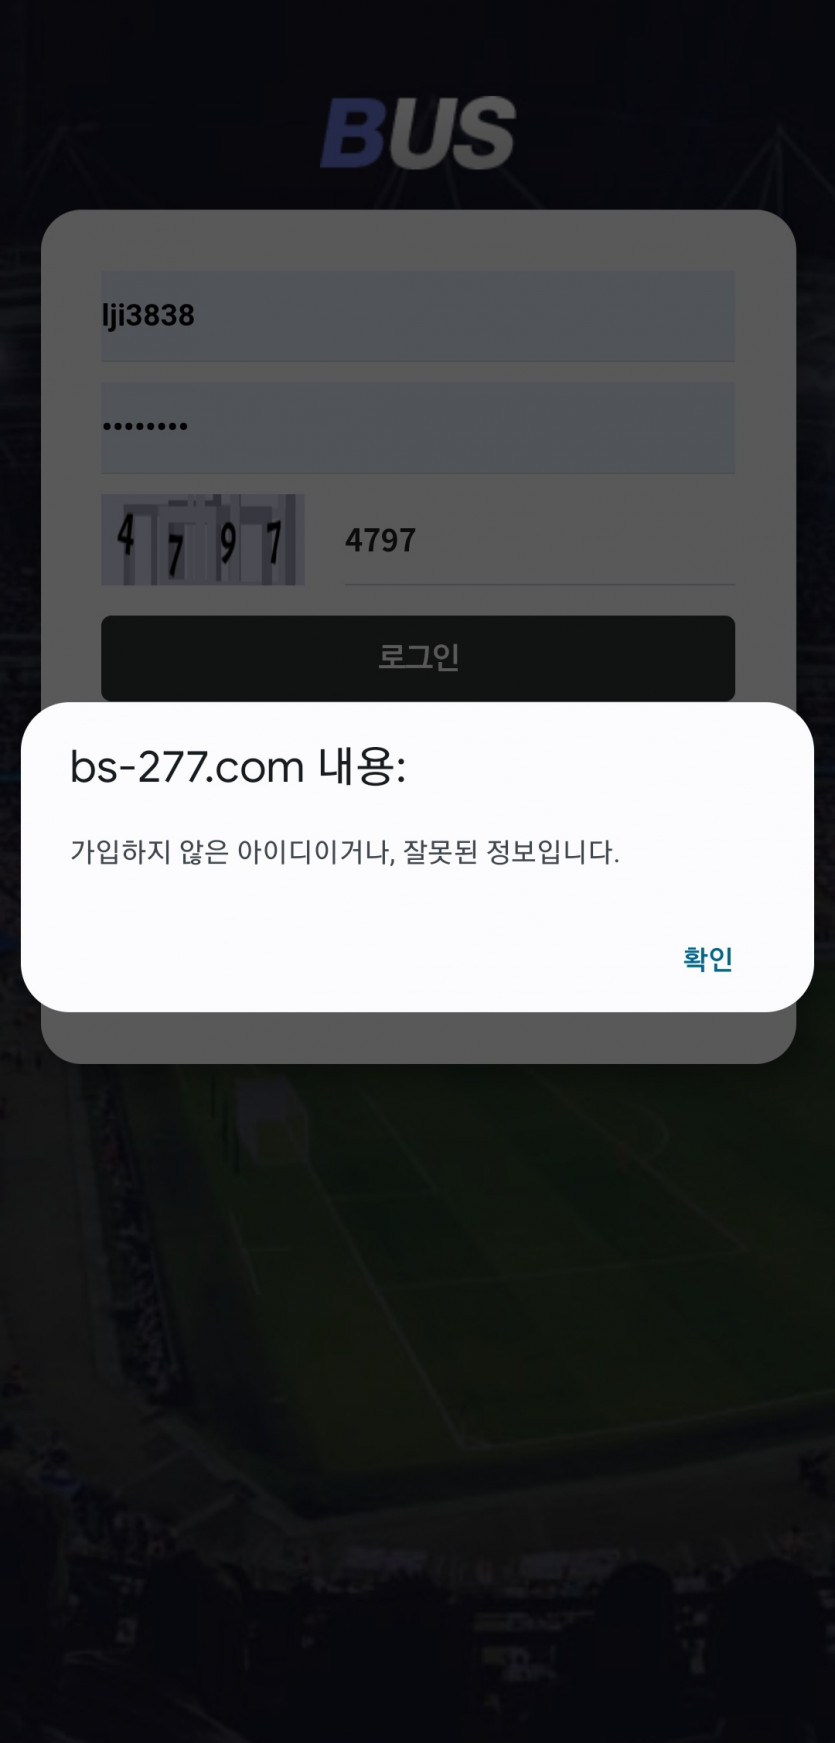 bs-277.com 버스 1800 만원 먹튀(3)